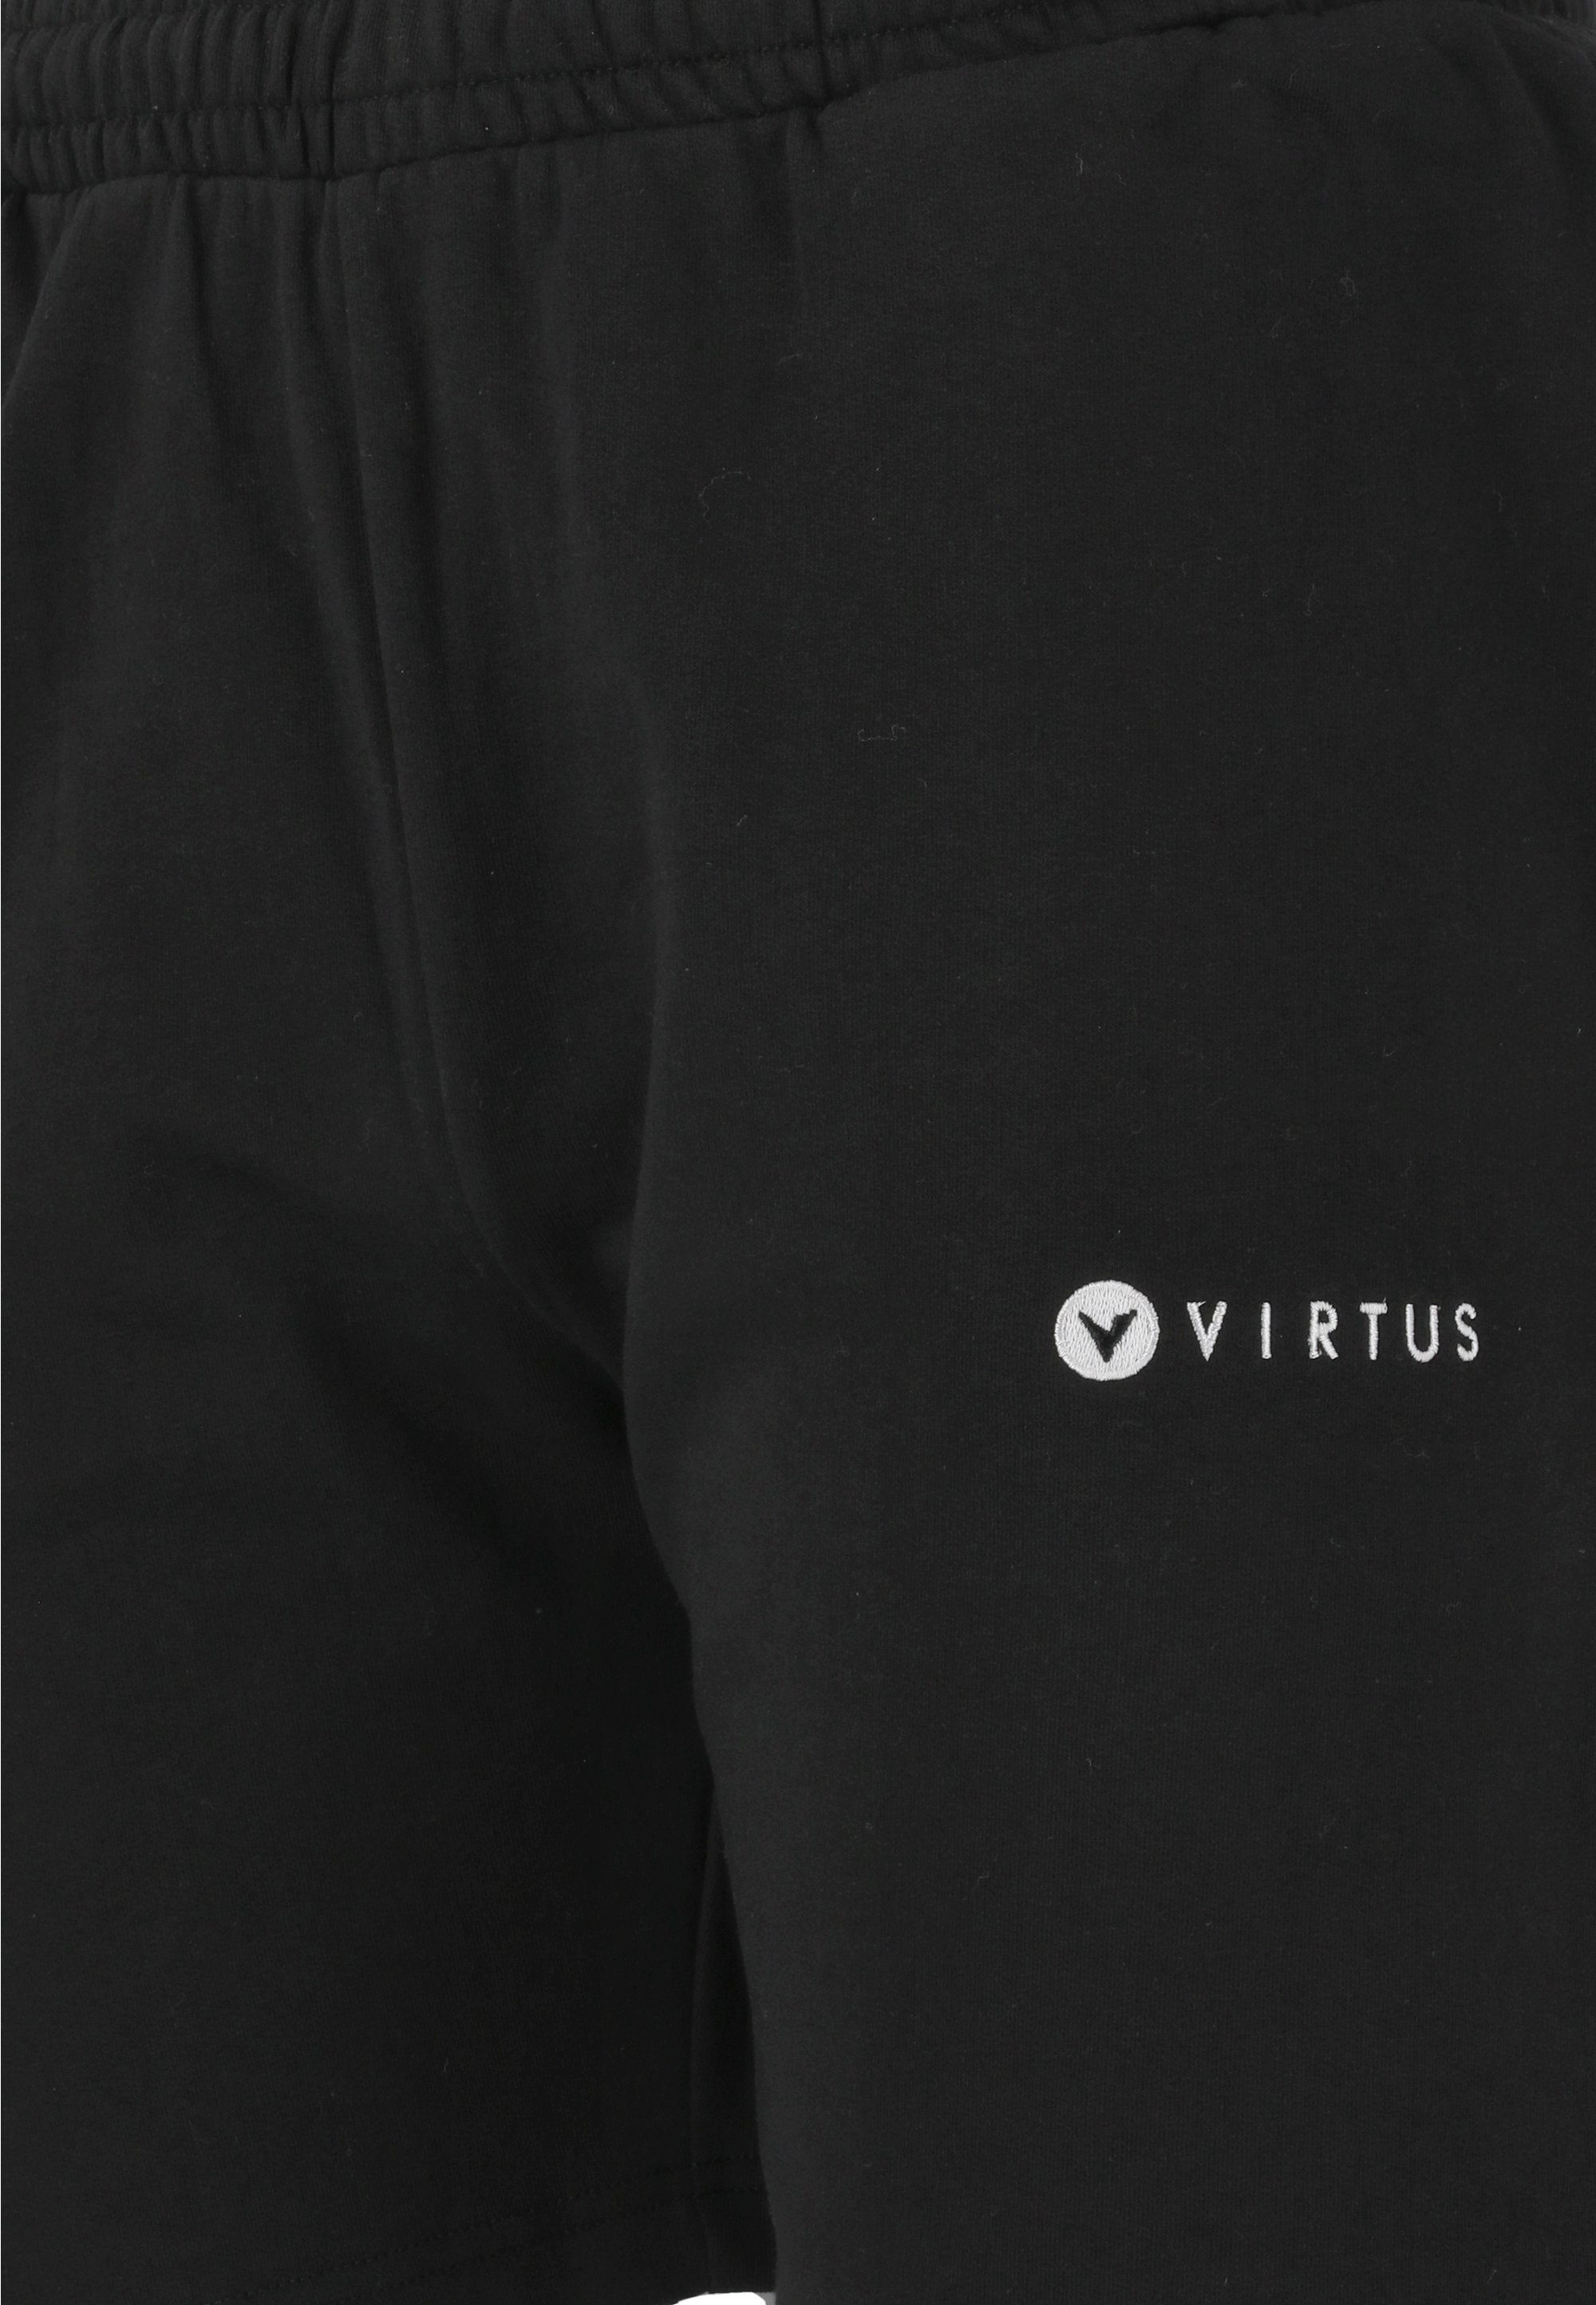 Virtus Shorts Kritow in sportlichem schwarz Design